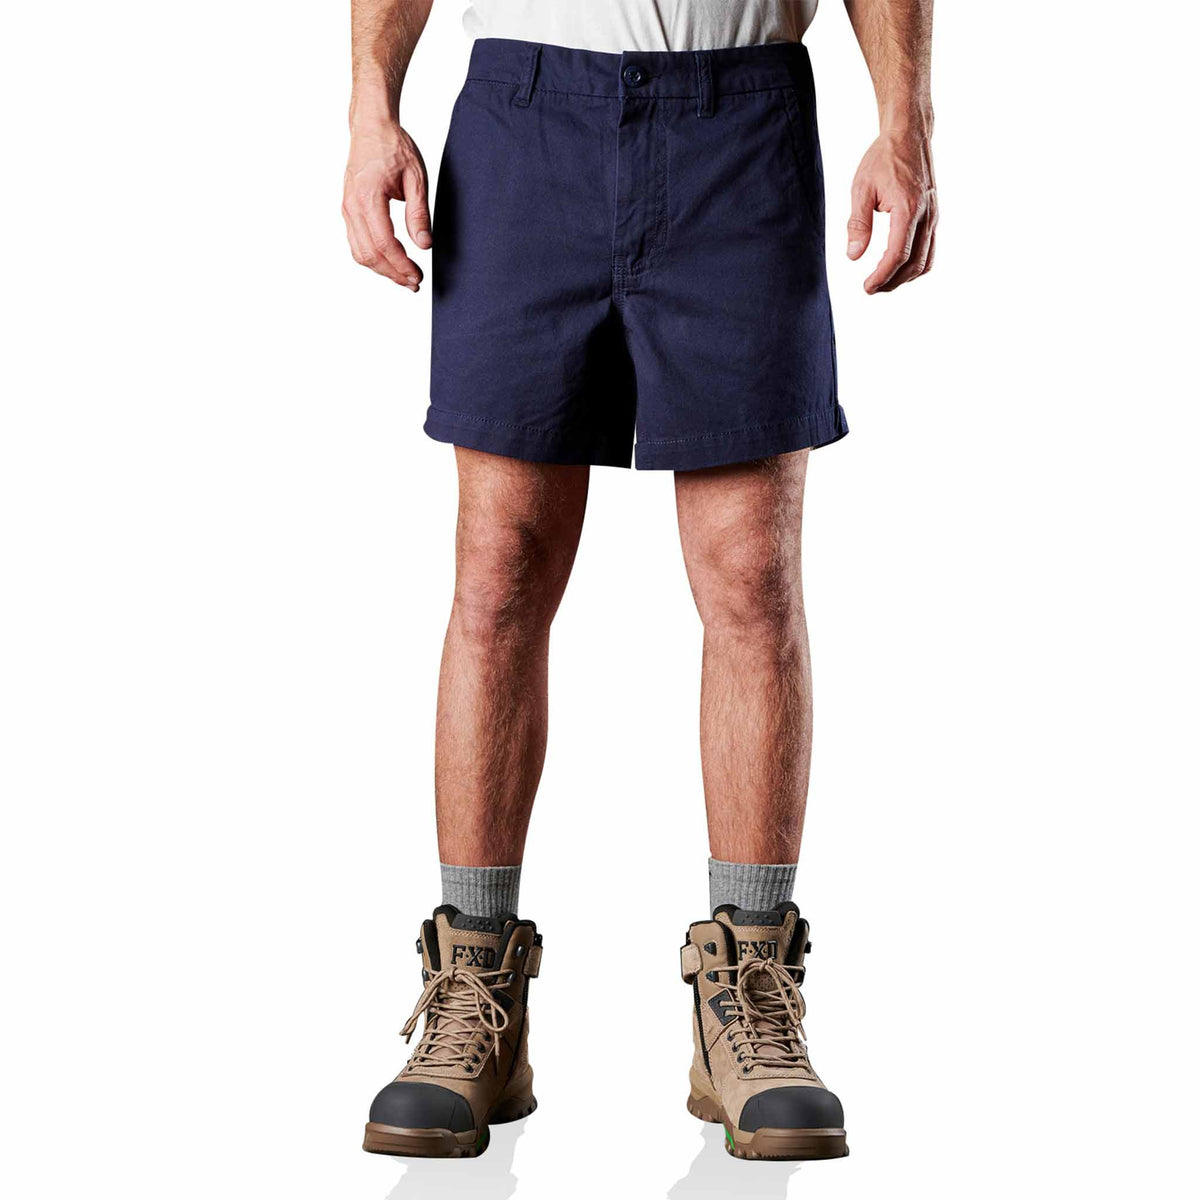 fxd cotton twill work short shorts in navy